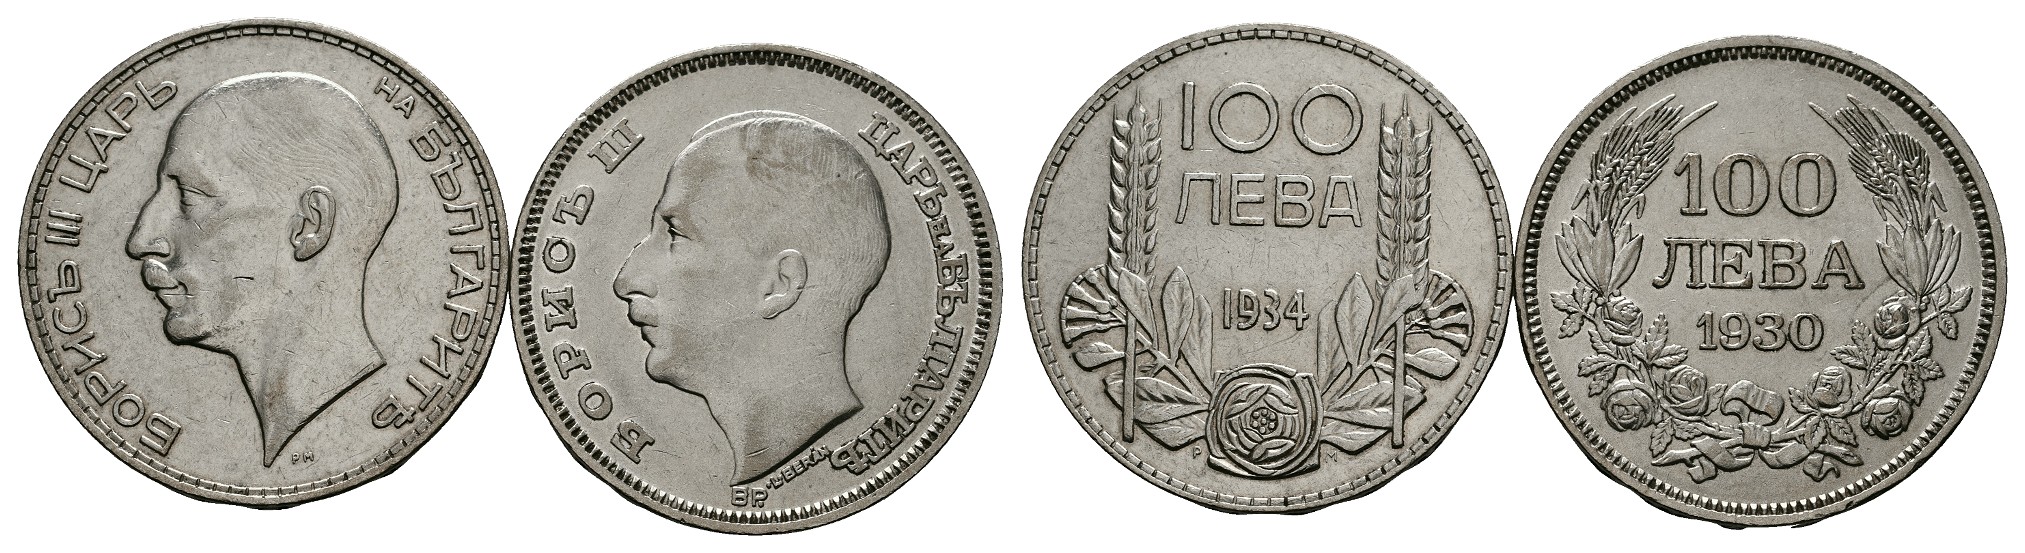  MGS Frankreich Lot 5 x 10 Francs 1930-1934 Feingewicht: 34,0g   